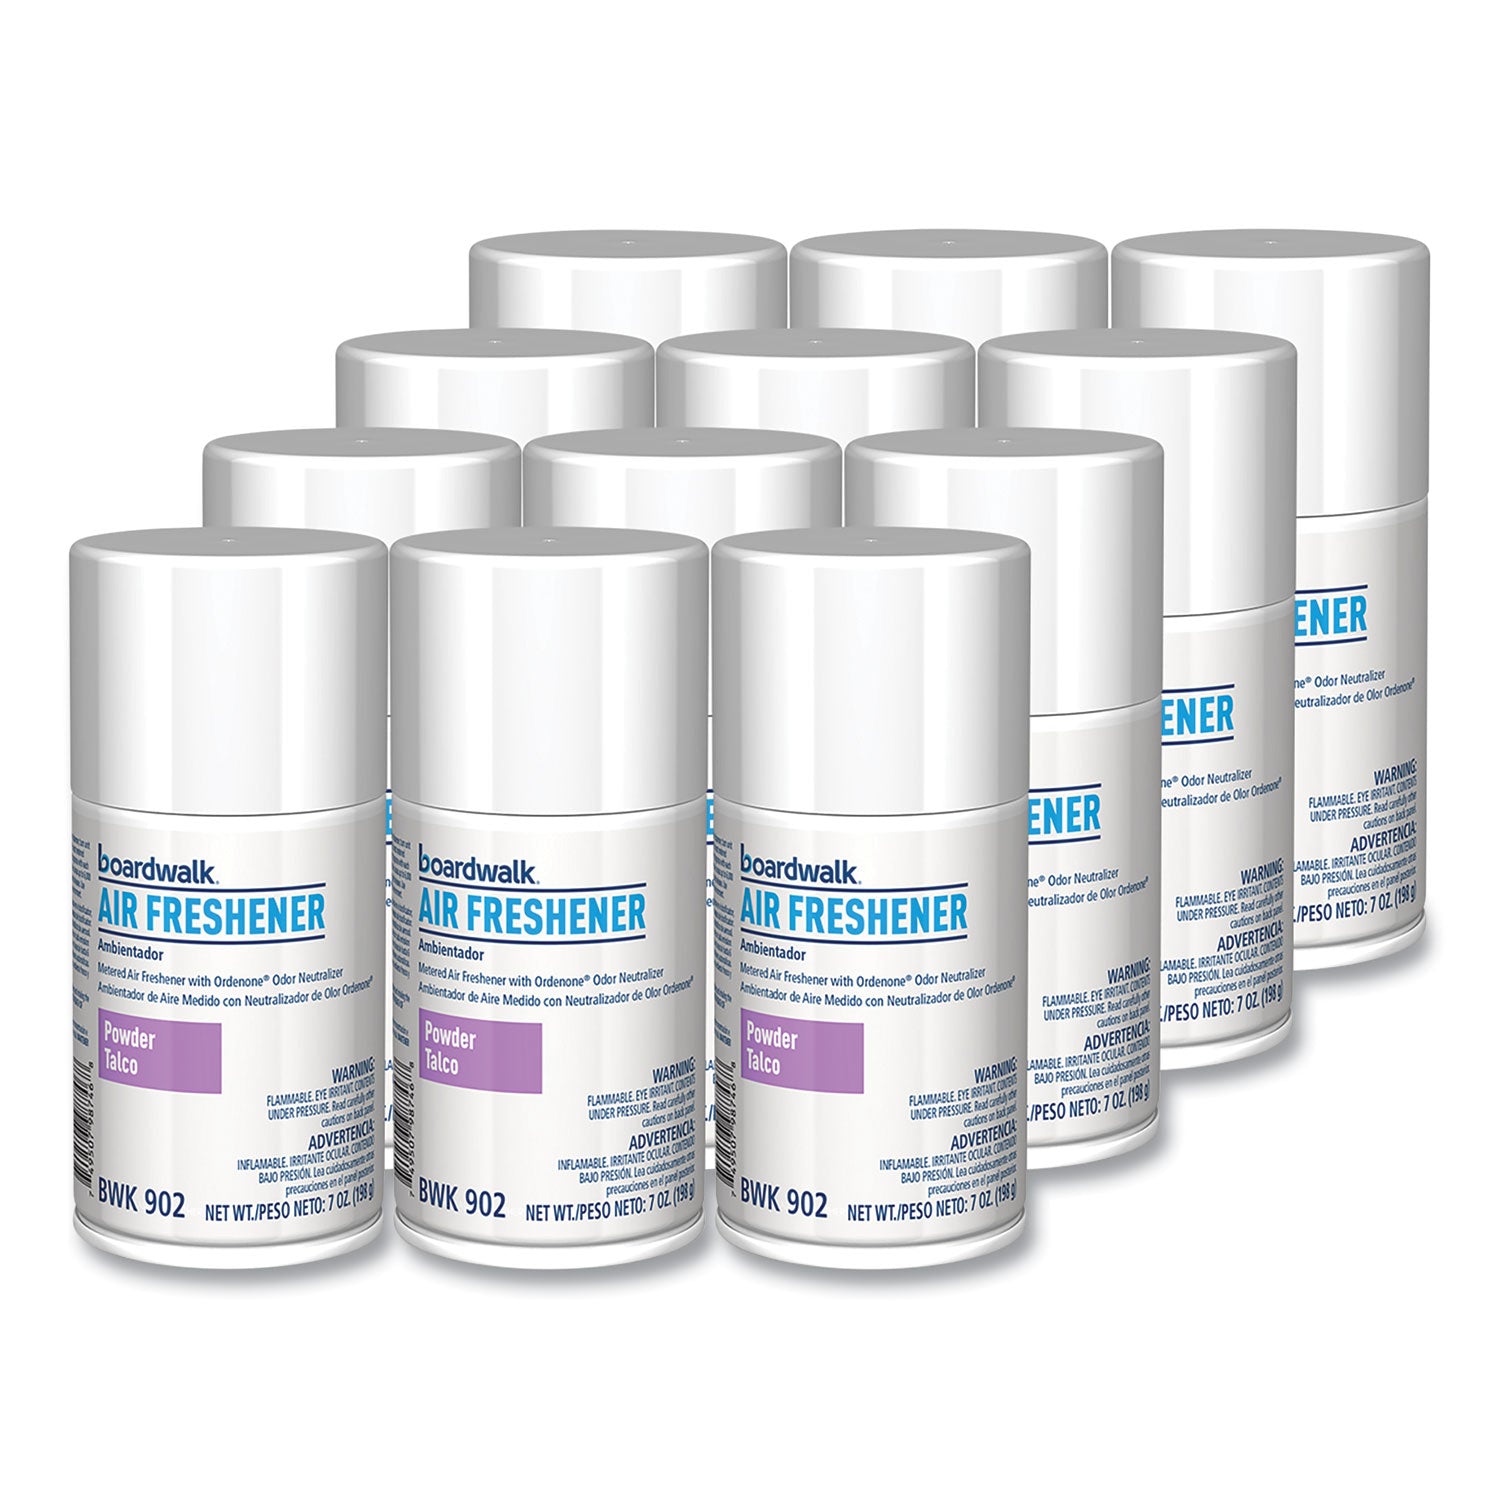 metered-air-freshener-refill-powder-mist-7-oz-aerosol-spray-12-carton_bwk902 - 2